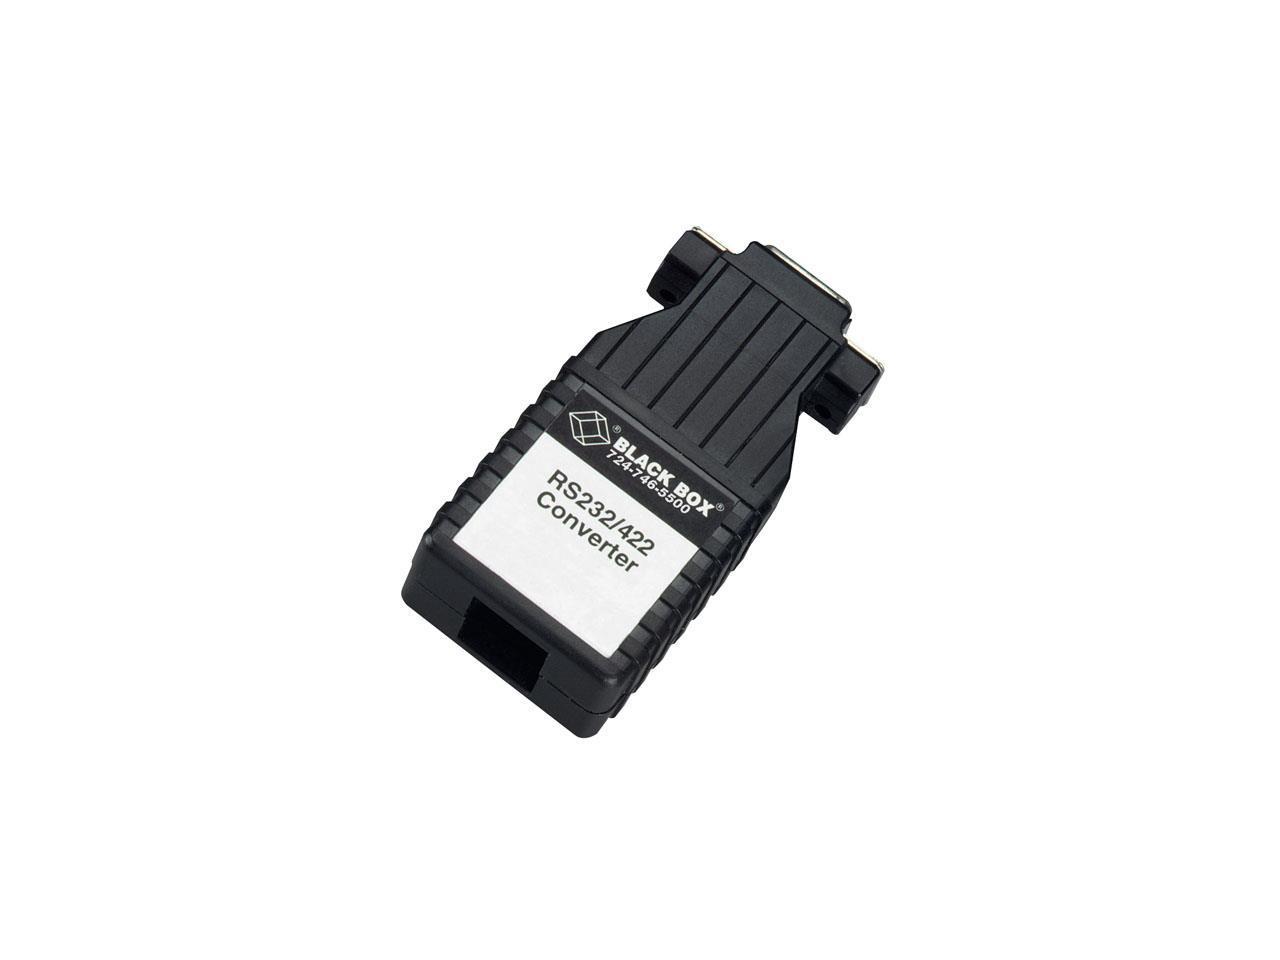 Black Box MultiPower LGC011A-R2 Transceiver/Media Converter - Newegg.com